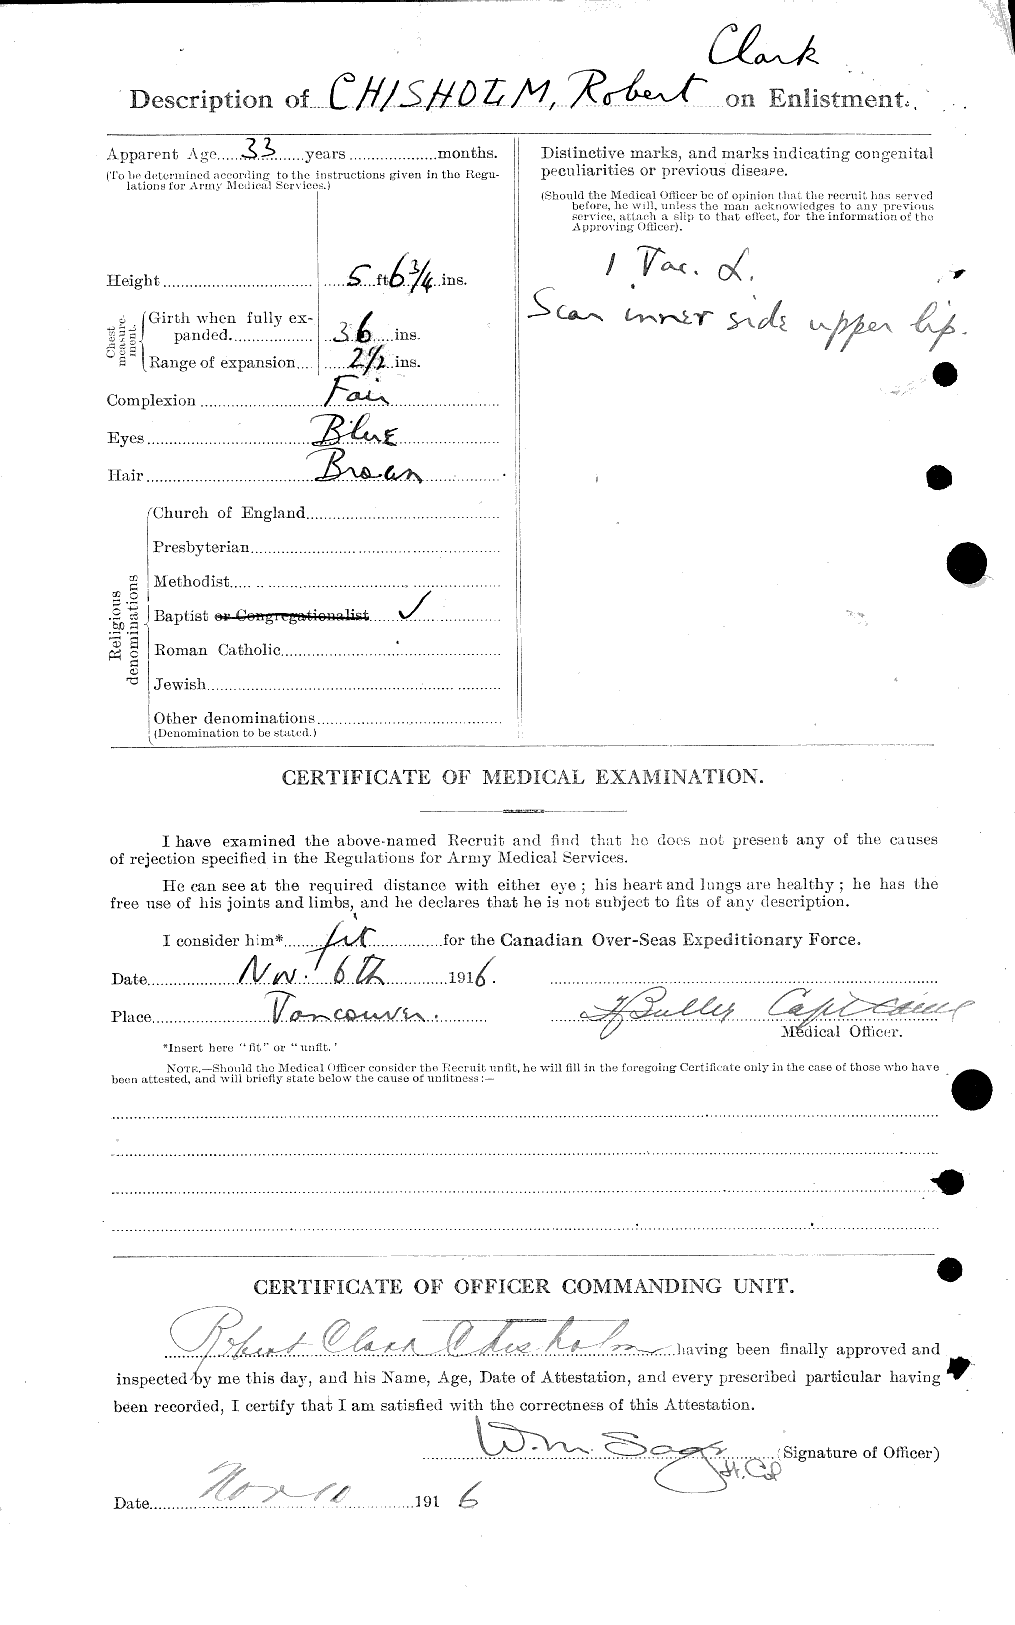 Dossiers du Personnel de la Première Guerre mondiale - CEC 018353b